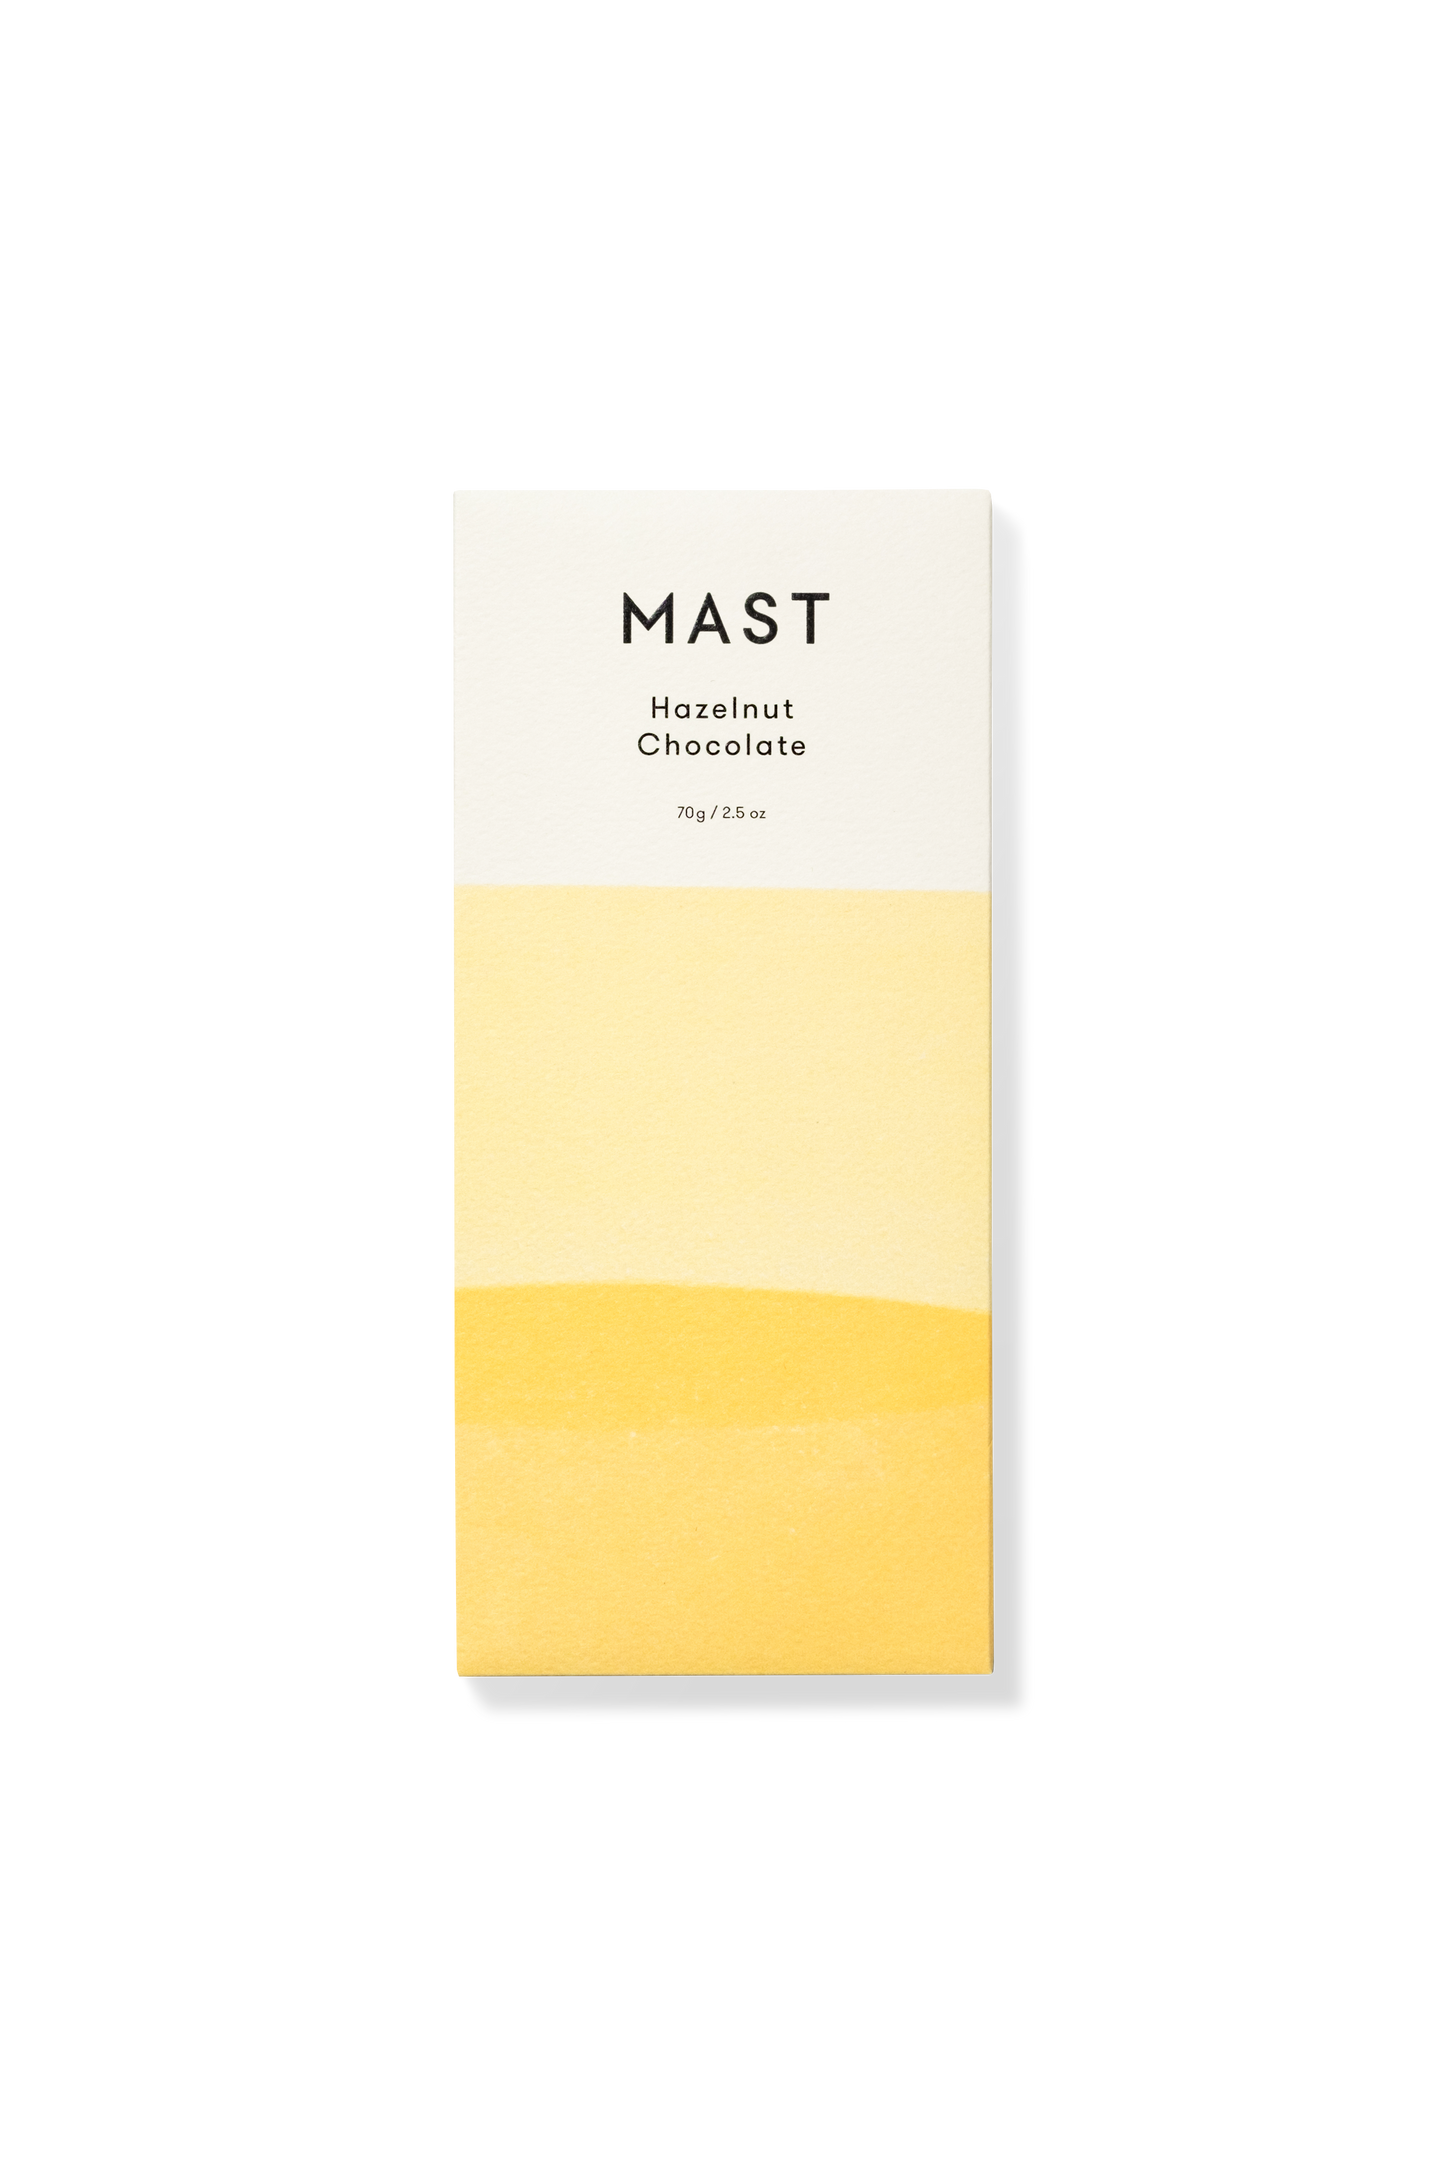 Mast - Hazelnut Chocolate - Classic (70g / 2.5oz)